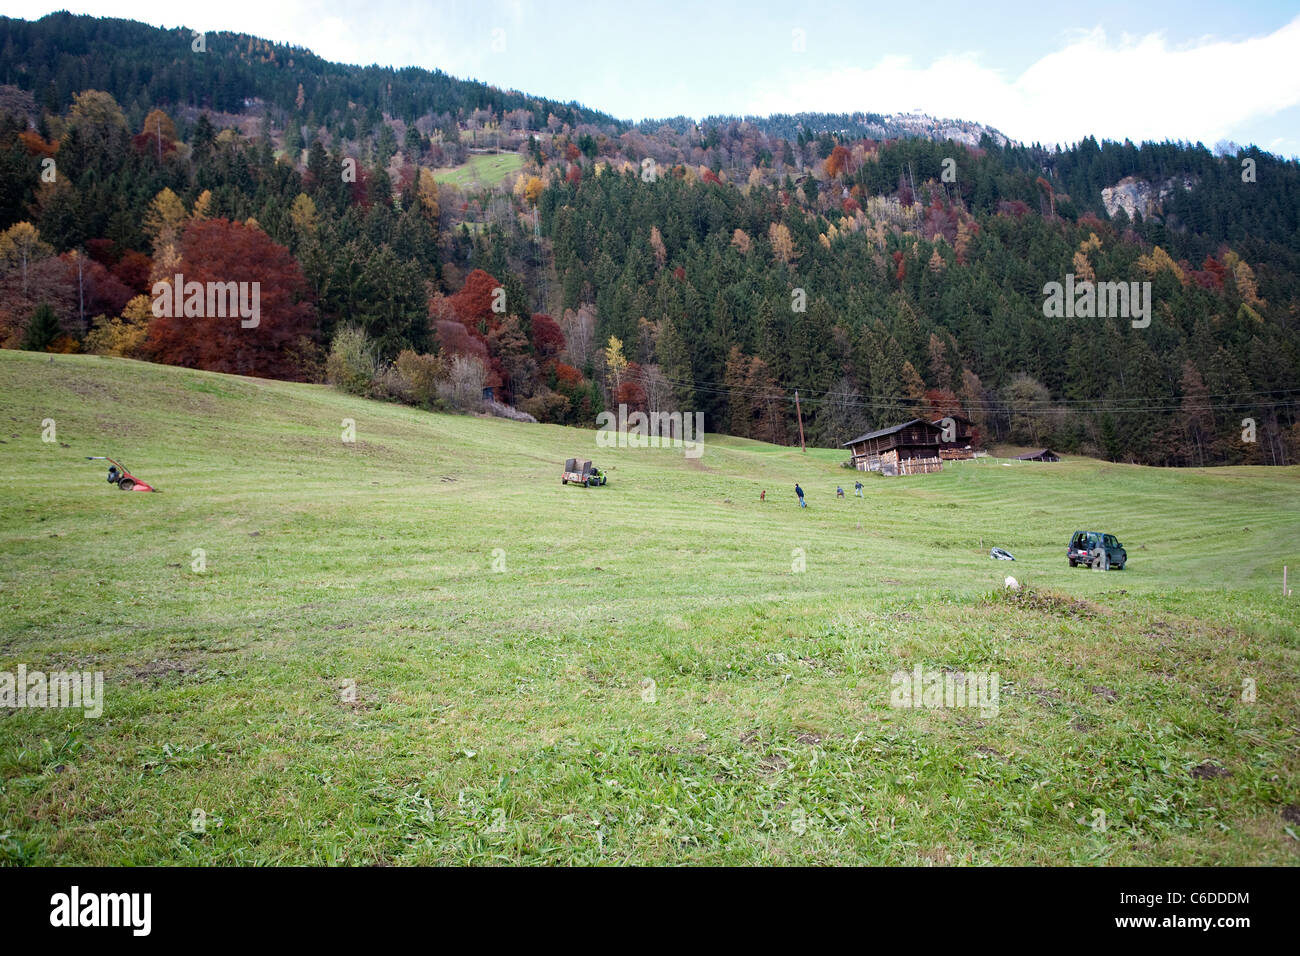 Bauern maehen eine Wiese, herbstlicher Wald, Finkenberg, Farmers on a meadow, trees, fall colours, Finkenberg Stock Photo